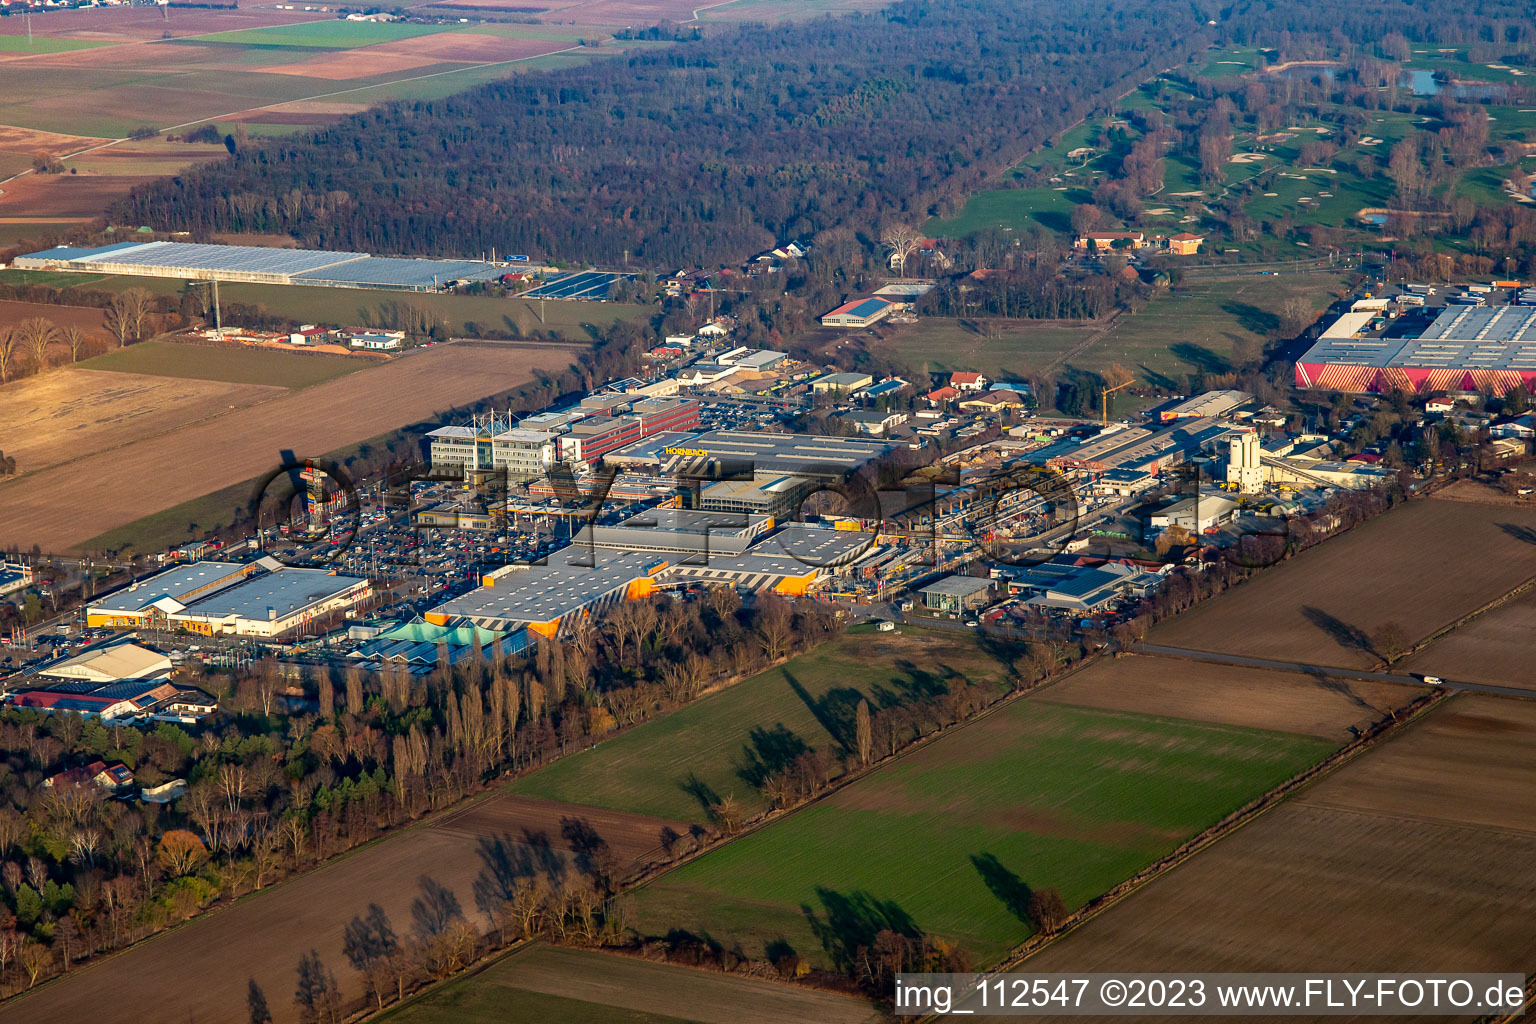 Vue aérienne de Quincaillerie Hornbach du sud-ouest à Bornheim dans le département Rhénanie-Palatinat, Allemagne